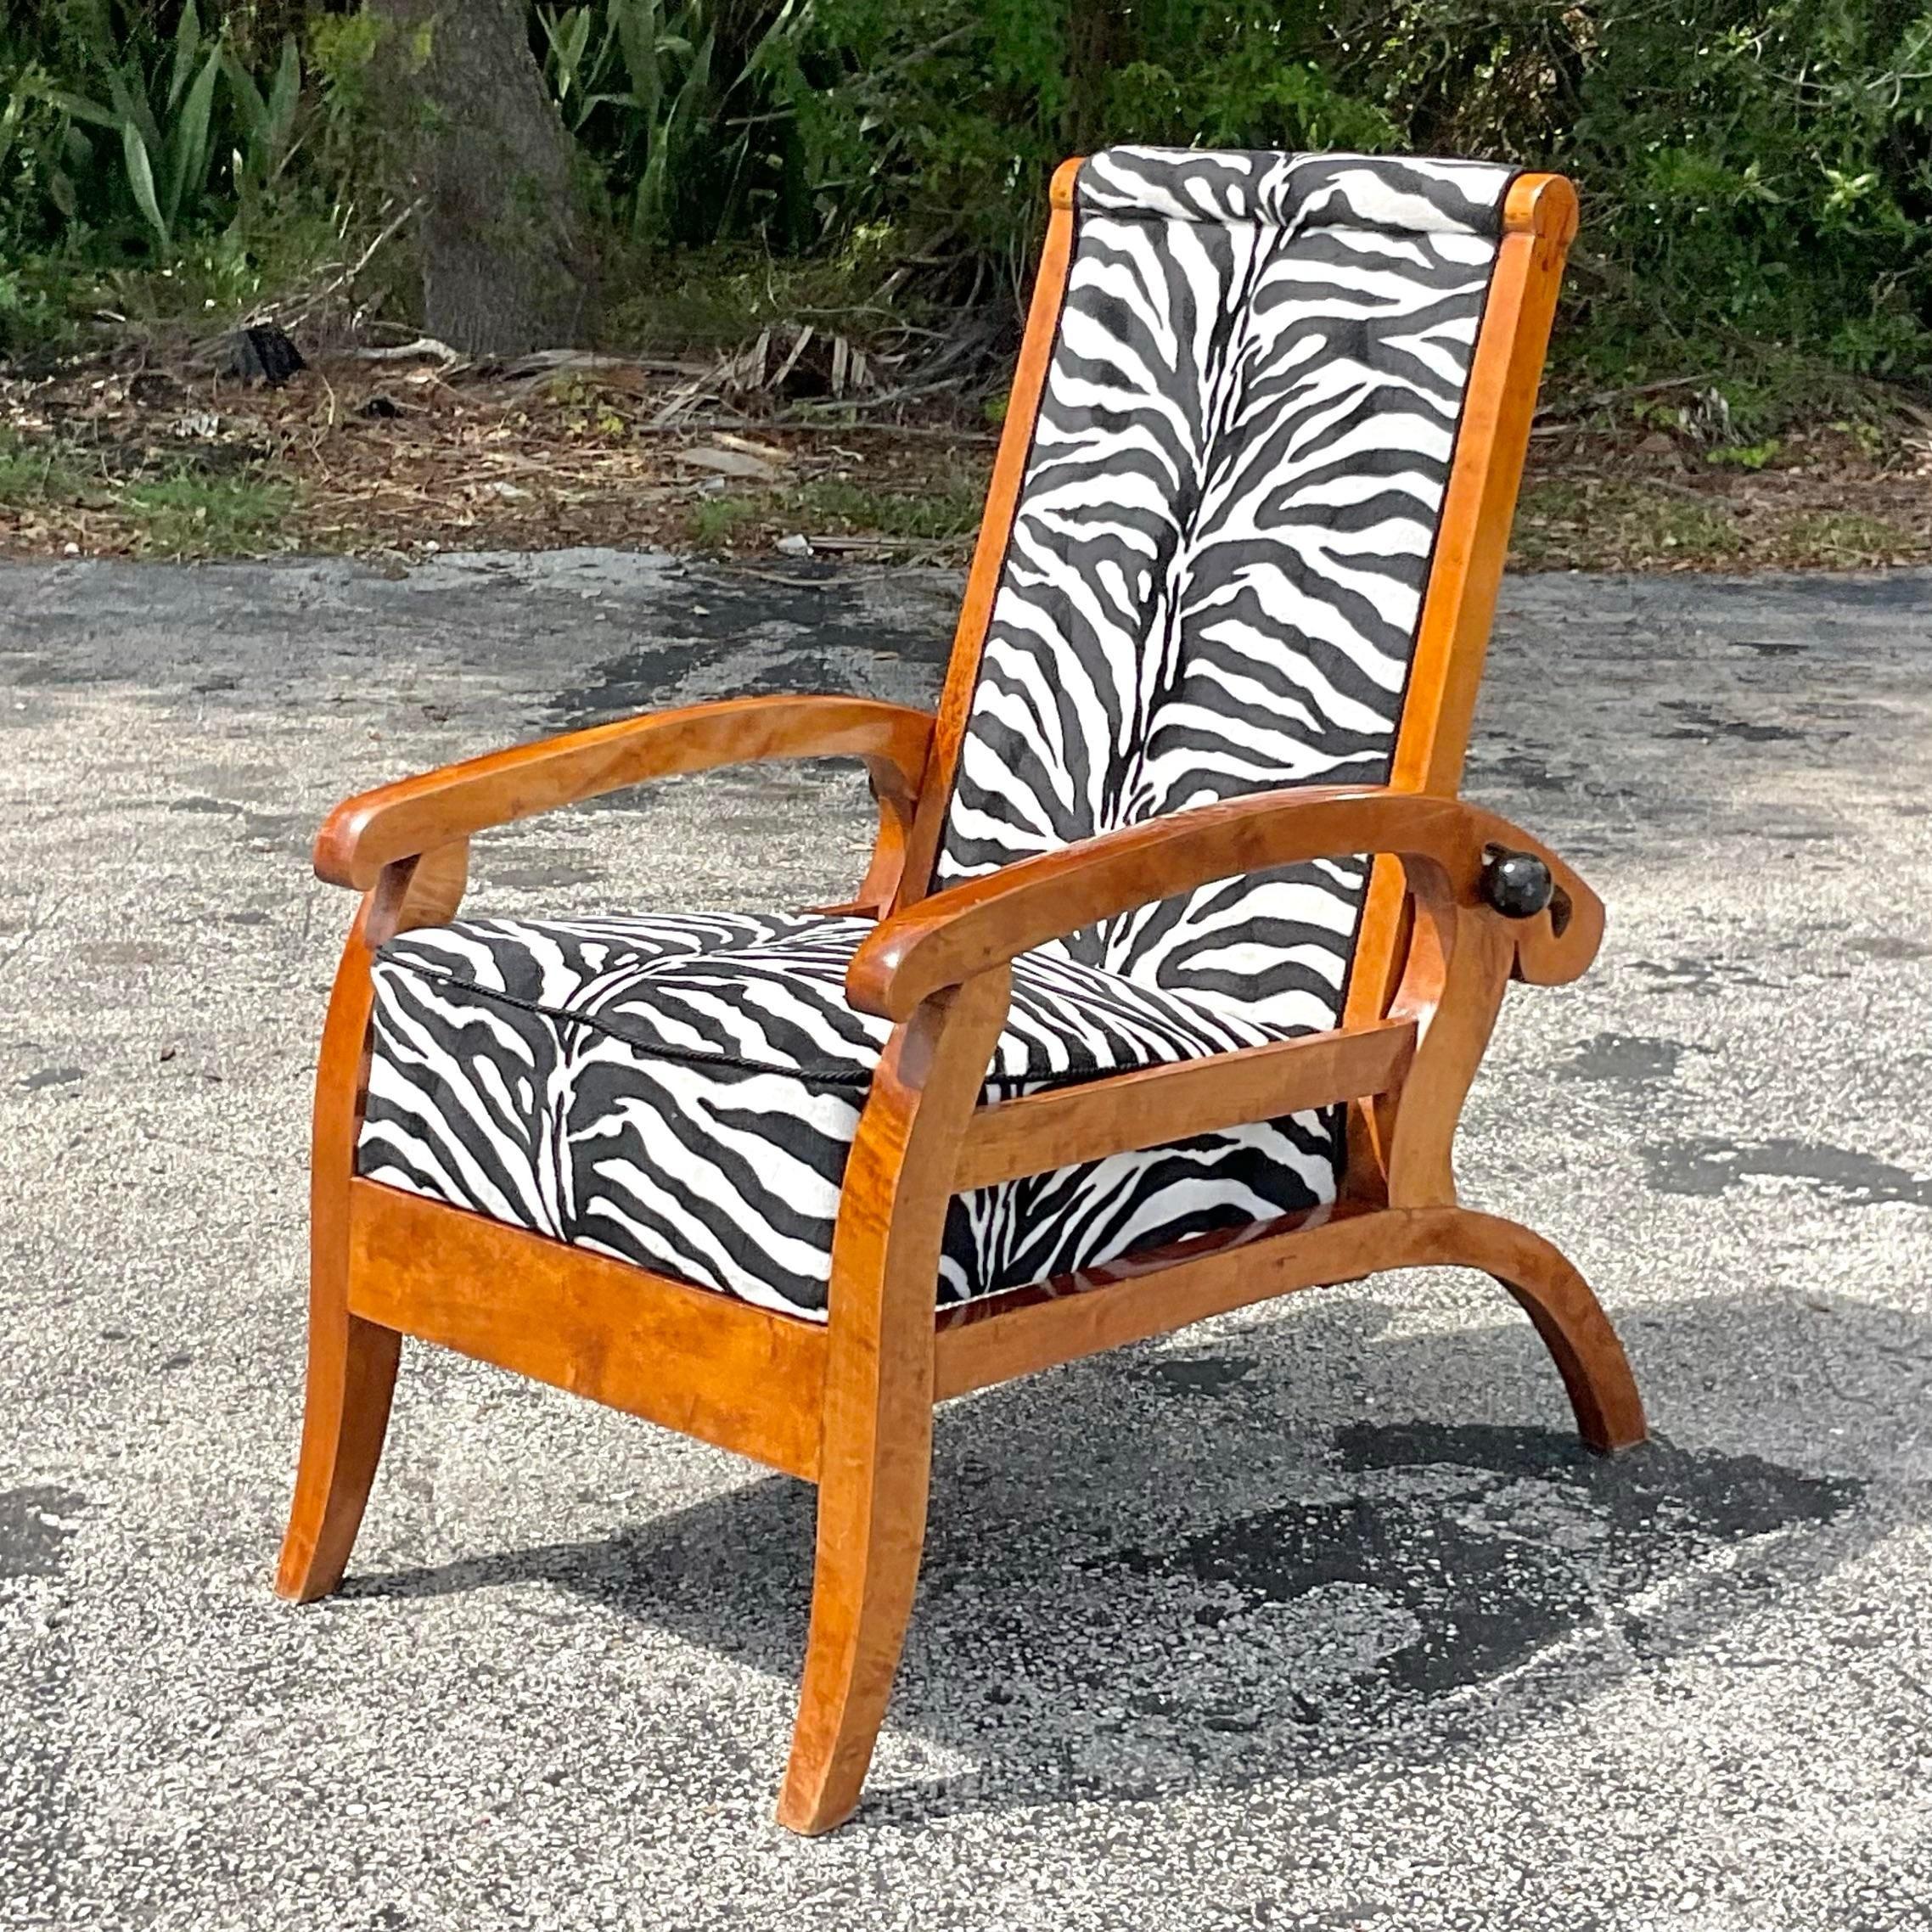 Une élégance intemporelle : Adoptez le style Boho Chic avec cette chaise longue Vintage By Biedermeier autrichienne fabriquée à partir d'un riche bois de ronce. Rehaussez votre espace avec une touche de sophistication européenne et de flair